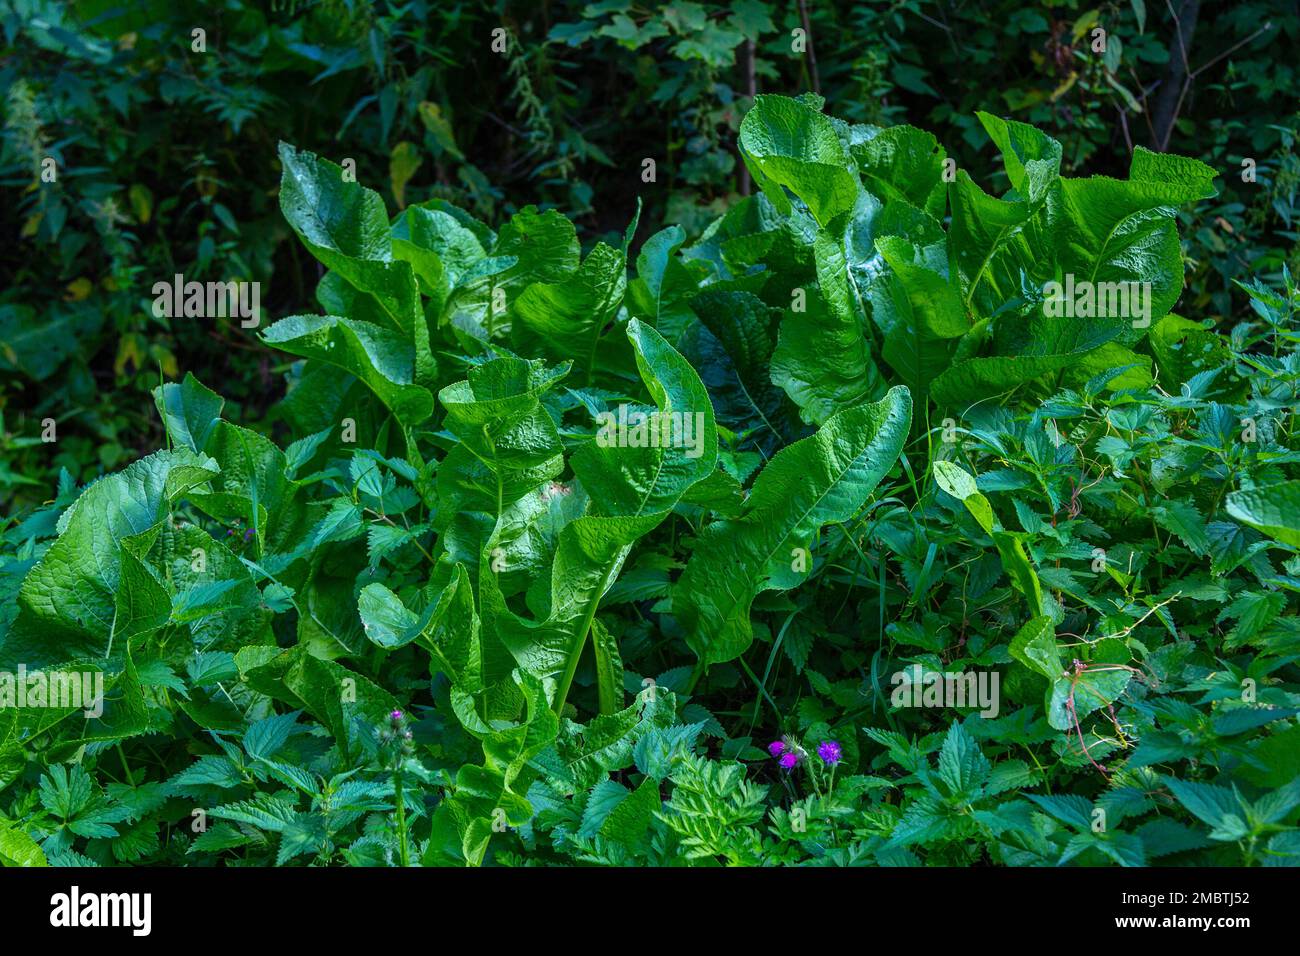 Blick auf grüne wilde Meerrettichblätter, die im Wald wachsen. Essbare Pflanze als Gewürz oder Gewürz. Stockfoto